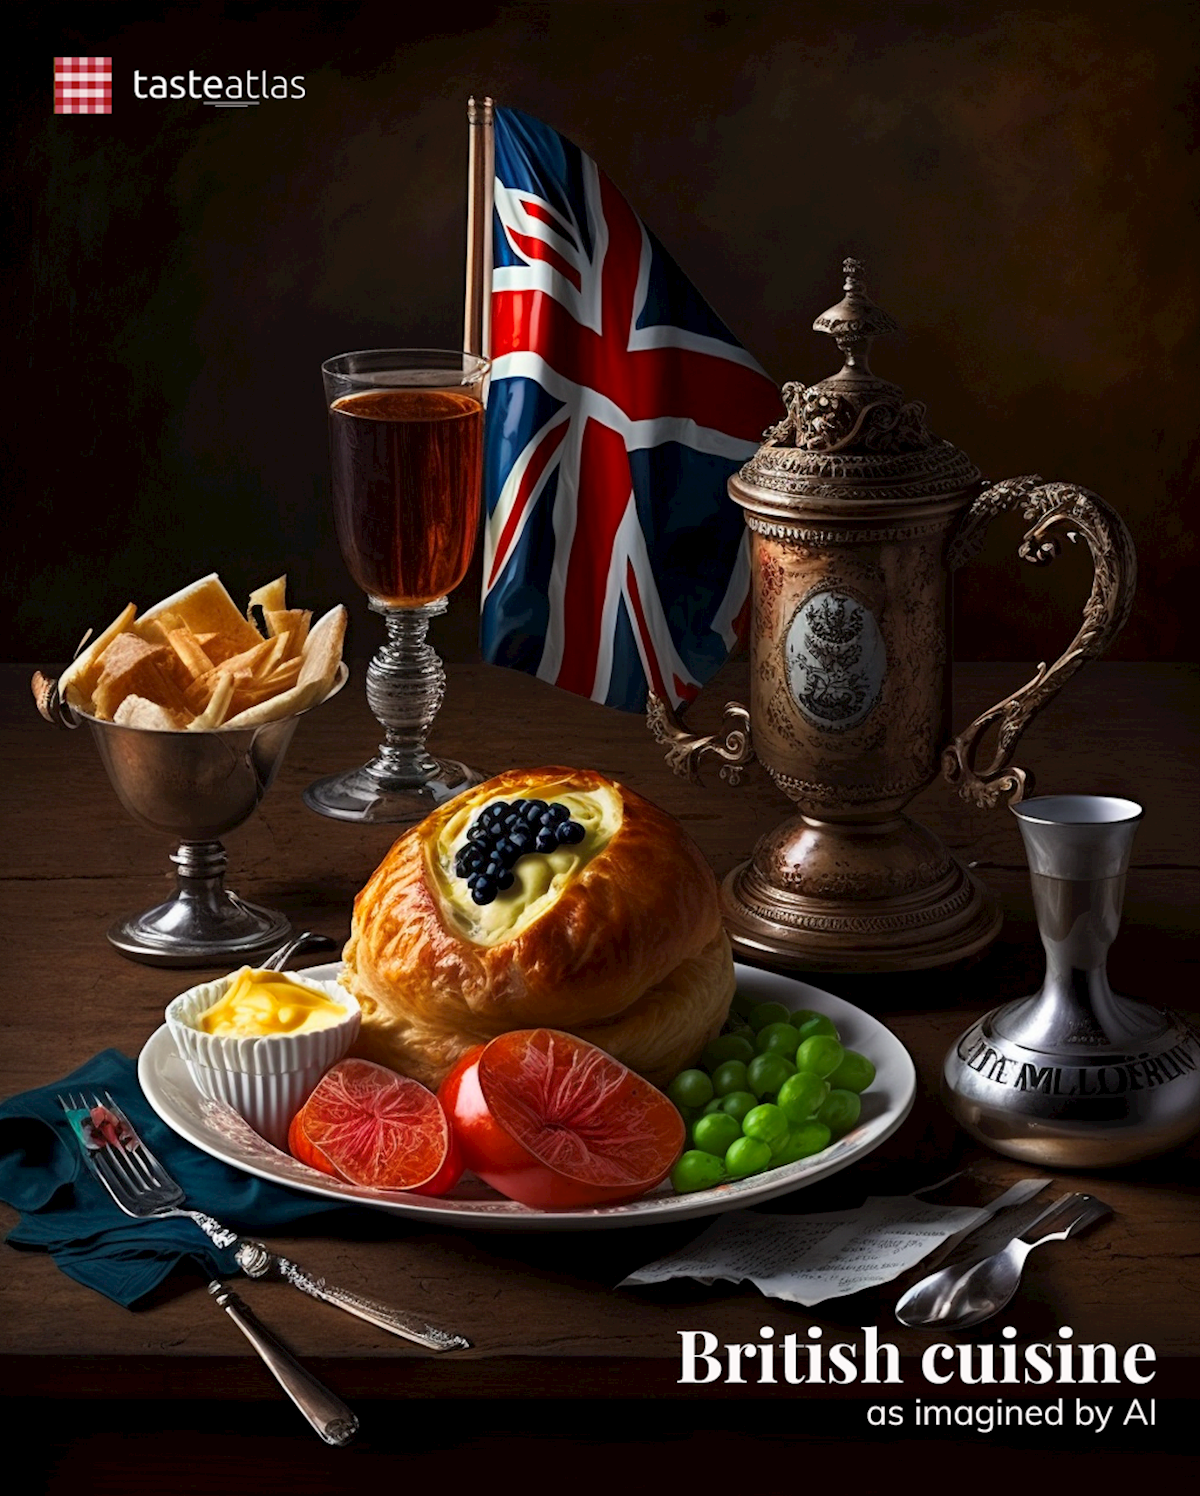 Prompt: Imagine British cuisine